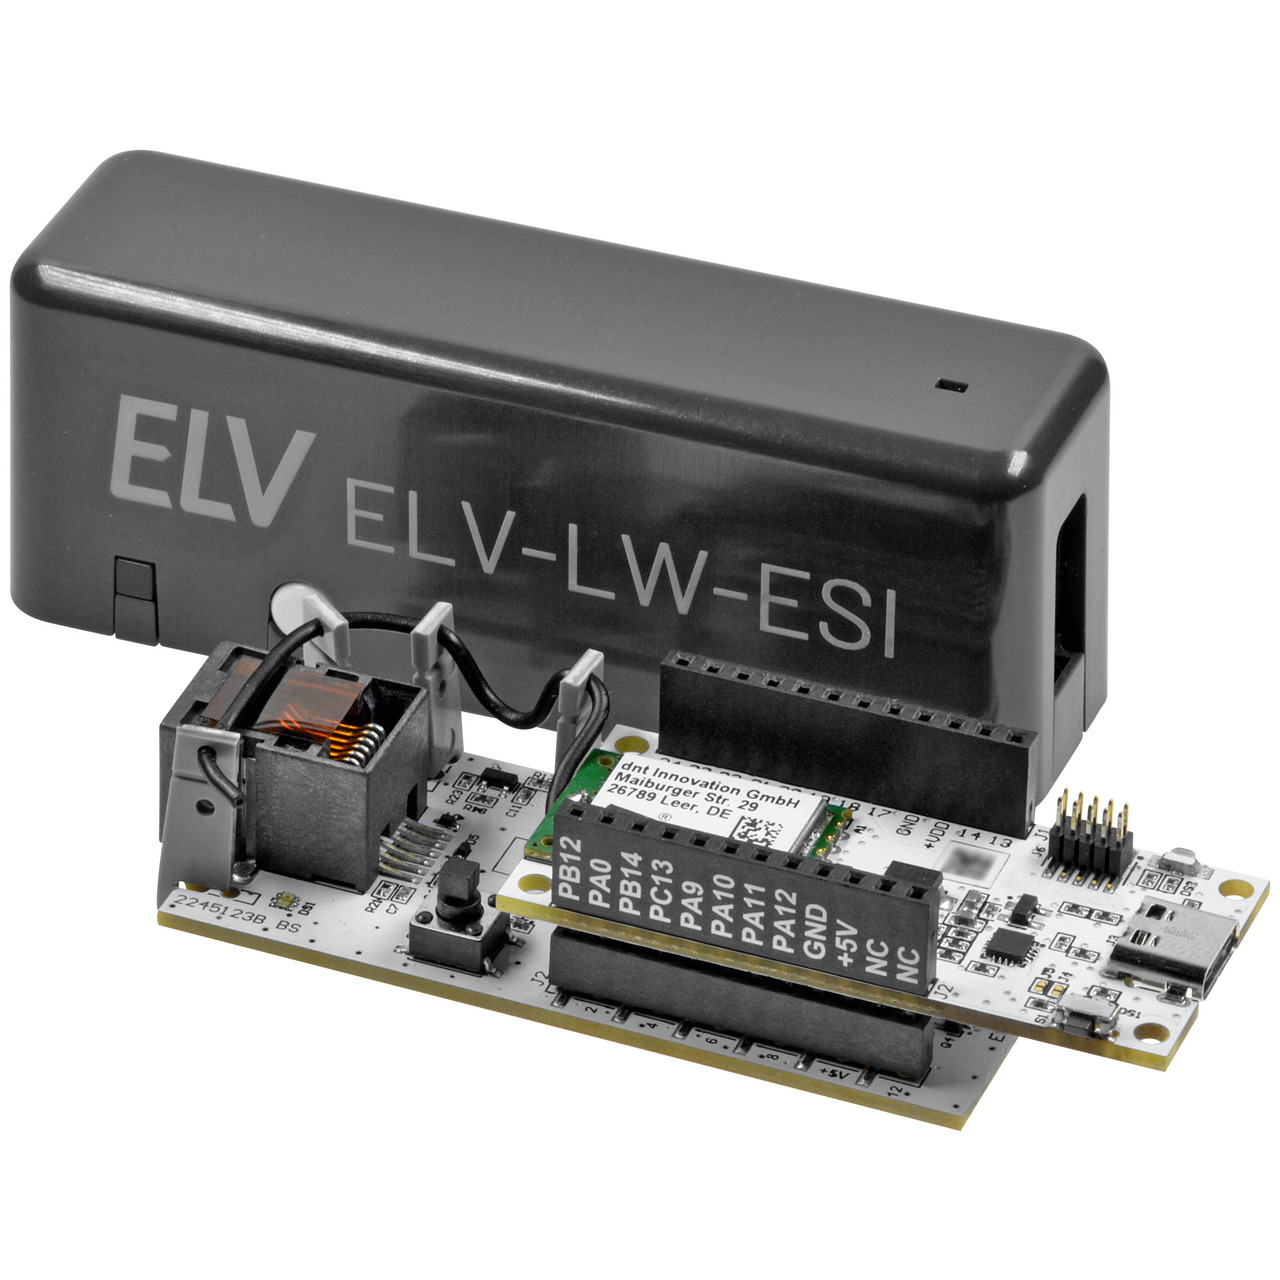 ELV Bausatz LoRaWAN(R) Energiezhler-Sensorschnittstelle- ELV-LW-ESI